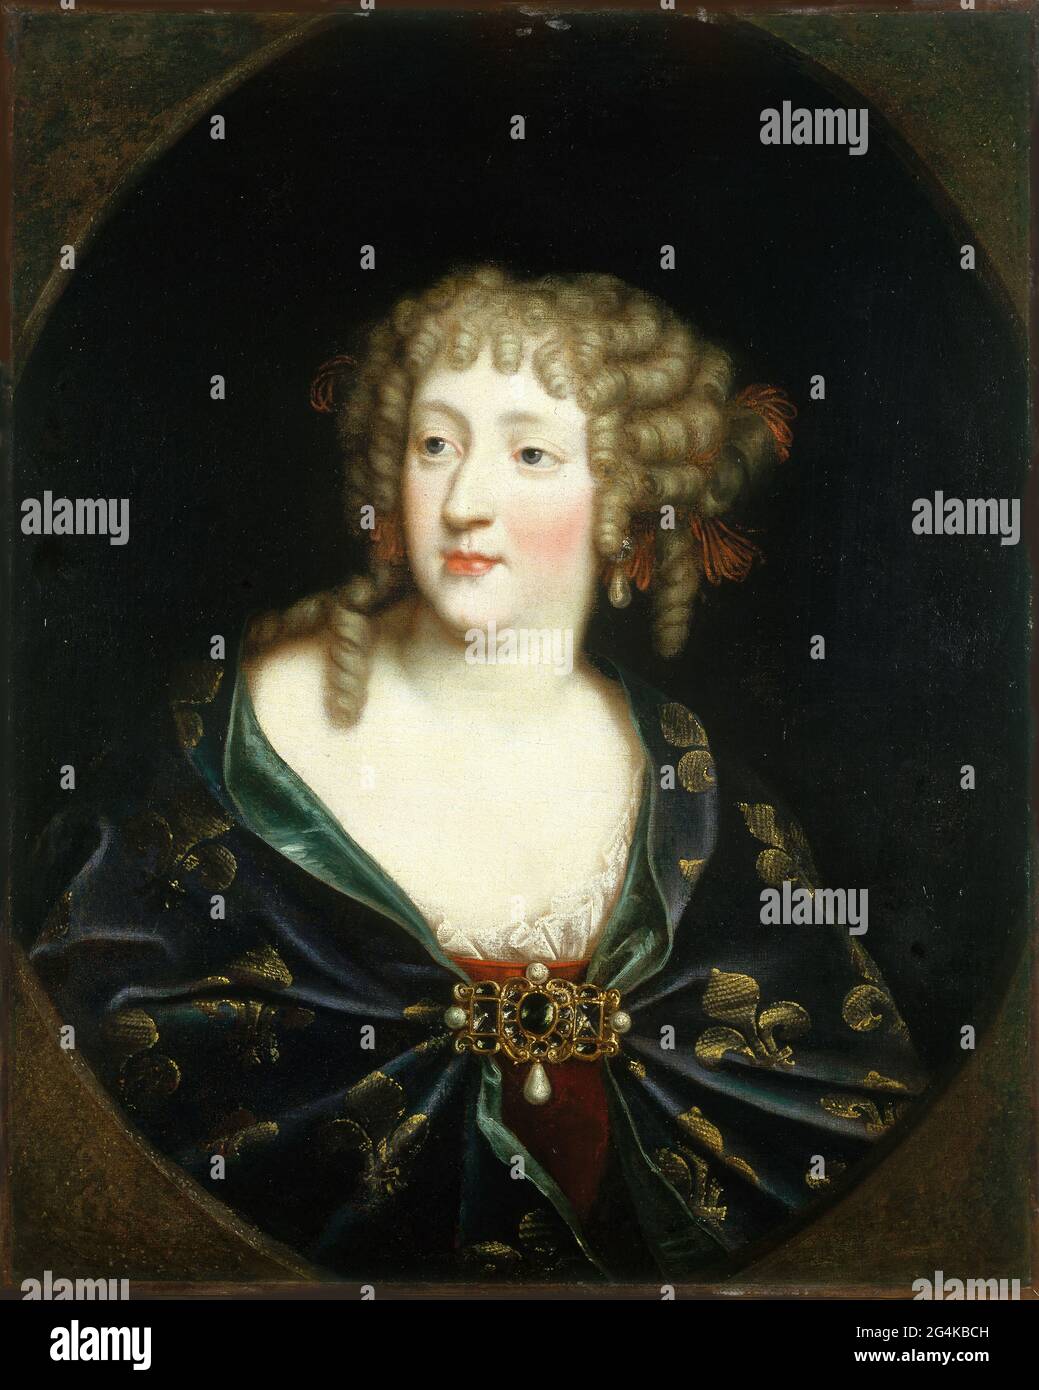 Porträt von Maria Theresia von Spanien (1638-1683), Königin von Frankreich, um 1675. Gefunden in der Sammlung von Mus&#xe9;e Carnavalet, Paris. Stockfoto